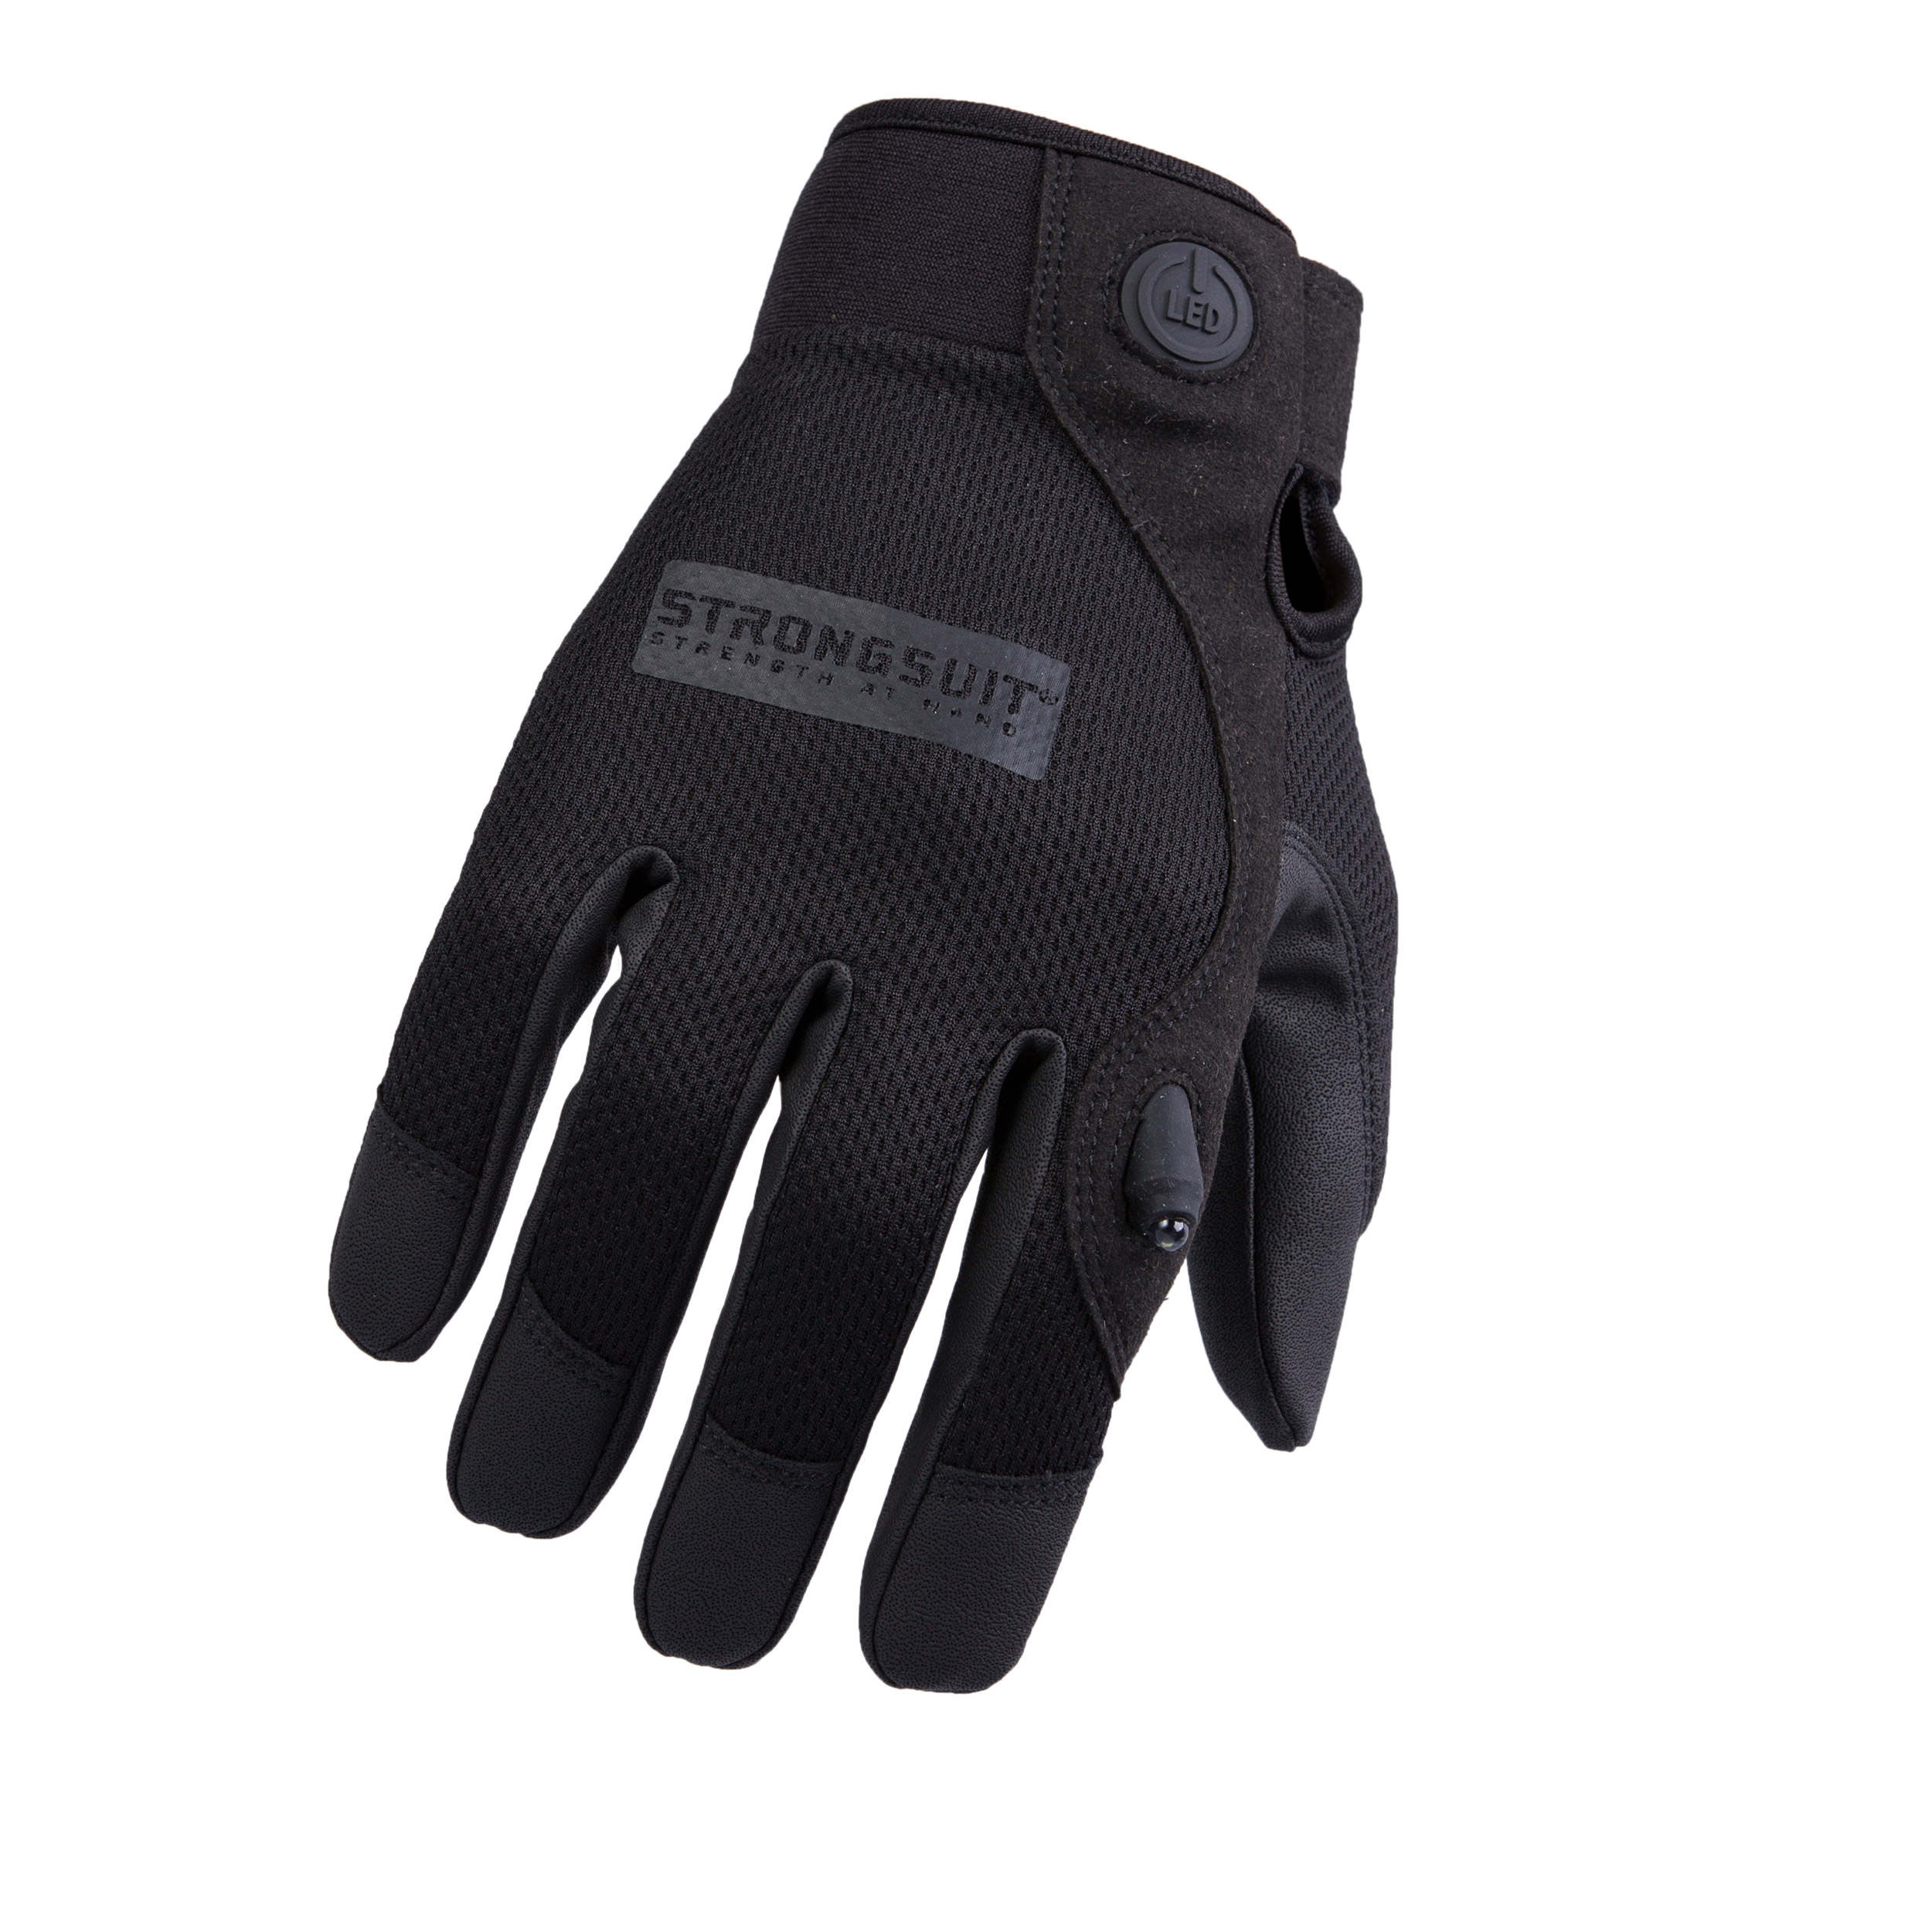 Second Skin Gloves Led Black Large